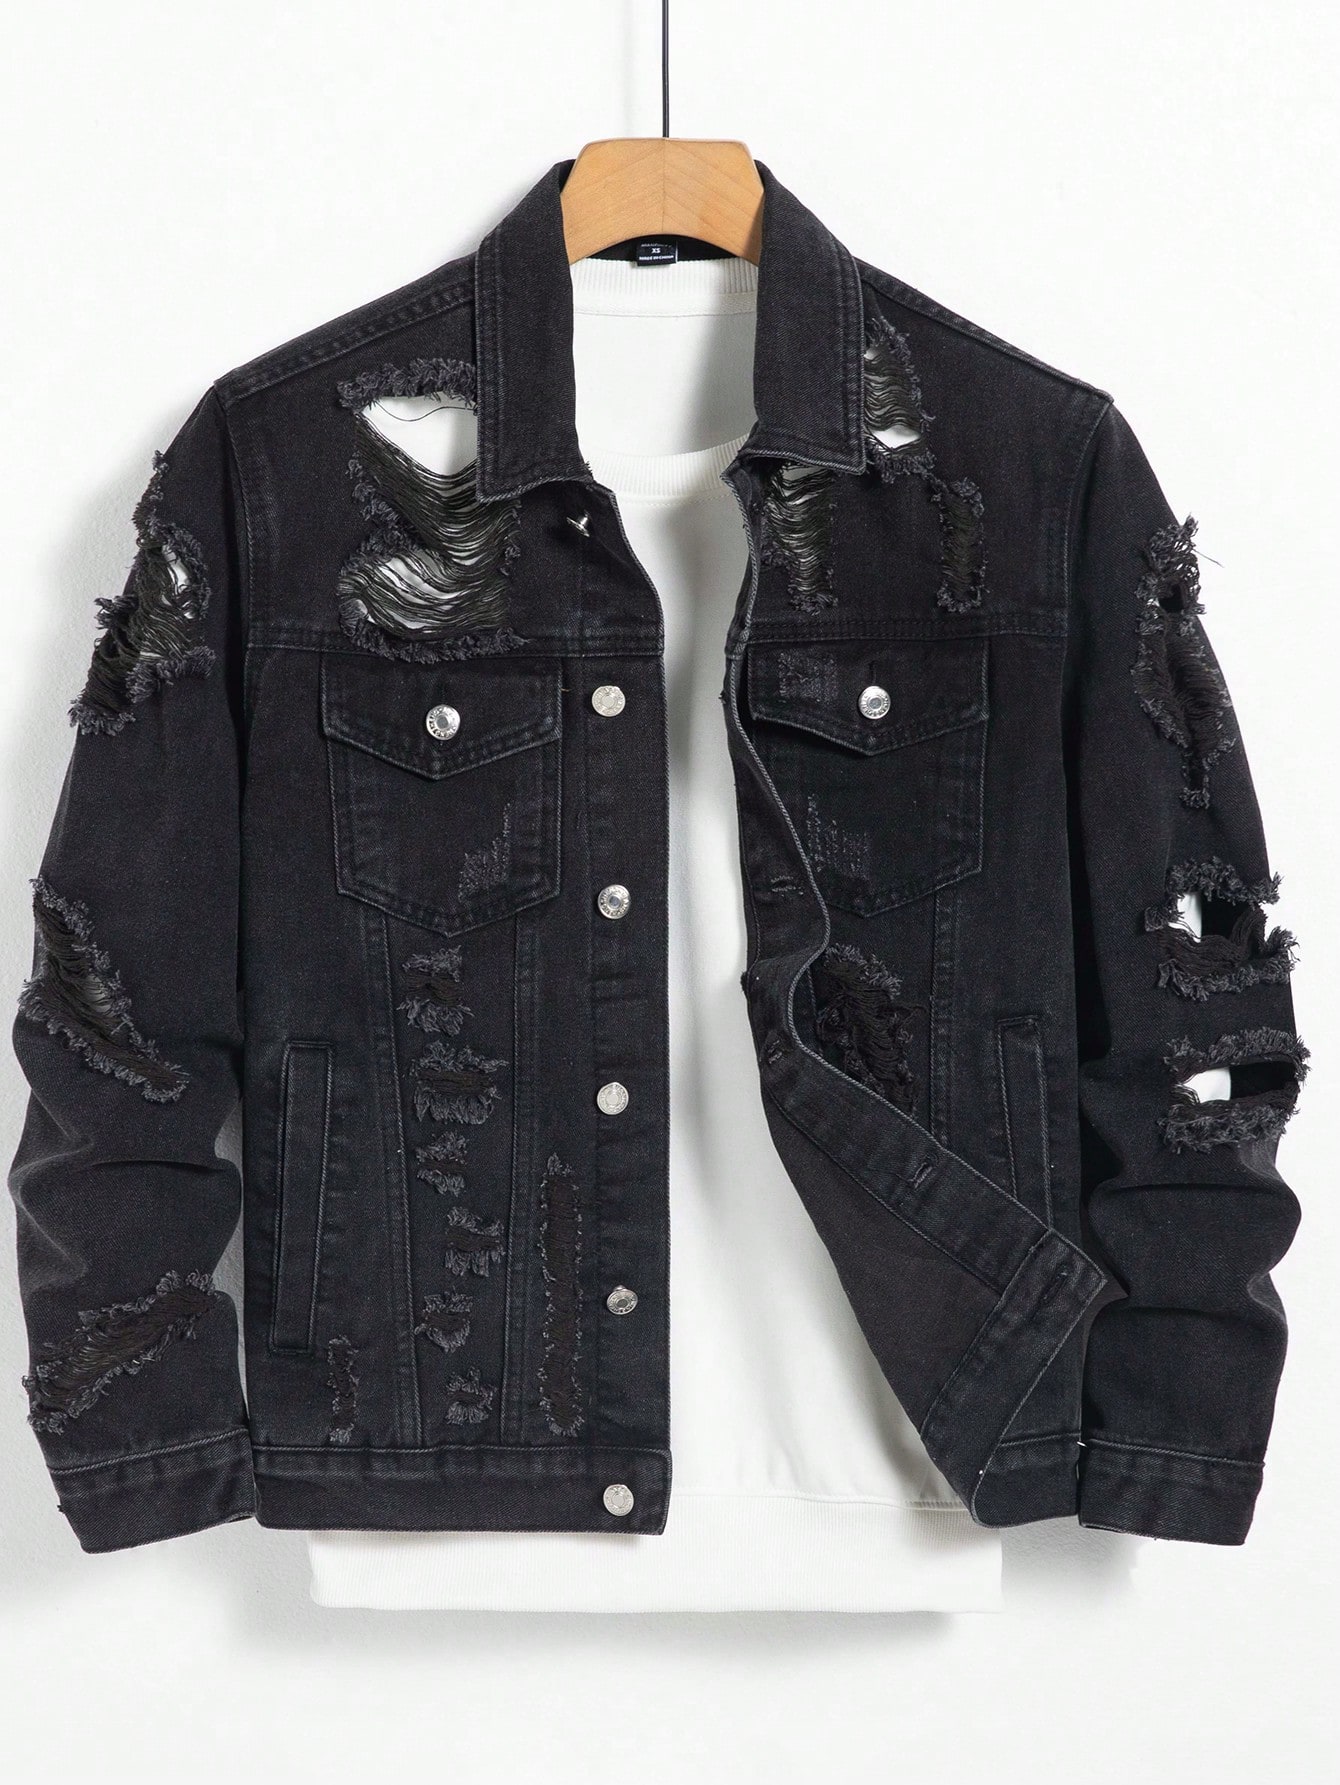 Мужская джинсовая куртка с потертостями на пуговицах спереди Manfinity EMRG, черный